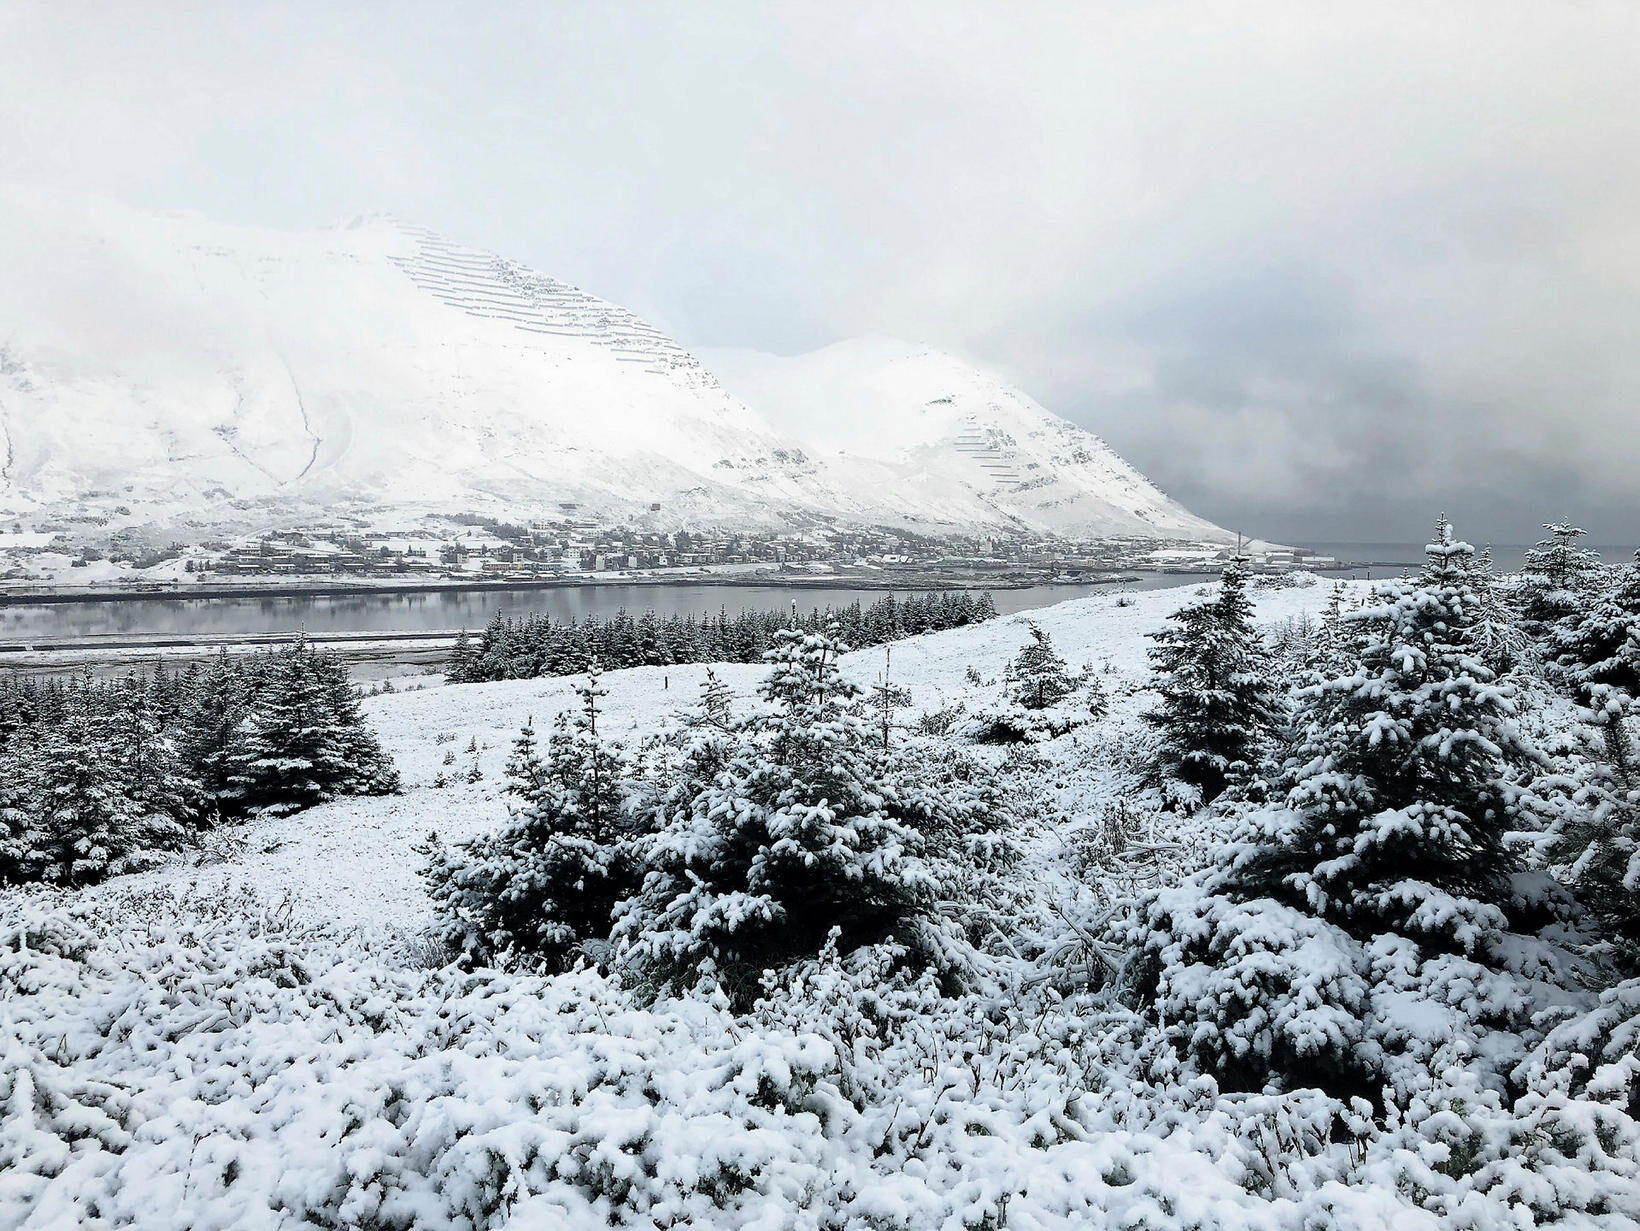 Siglufjörður, dressed in white this morning.